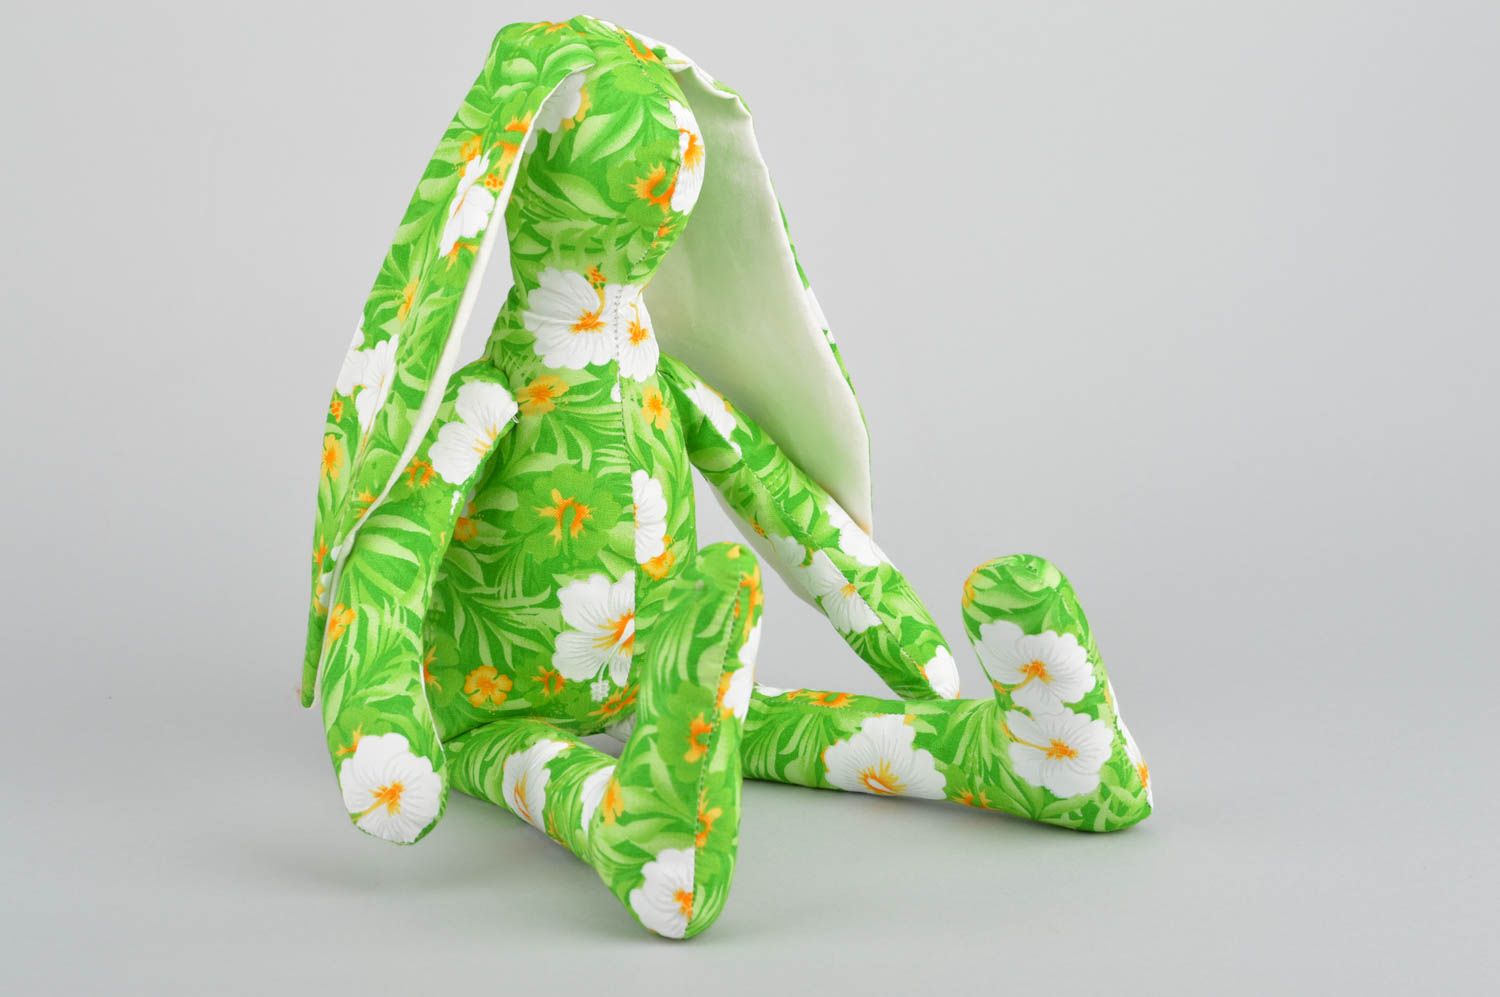 Яркая необычная детская мягкая игрушка из ткани в виде зайца ручной работы Лужок фото 2